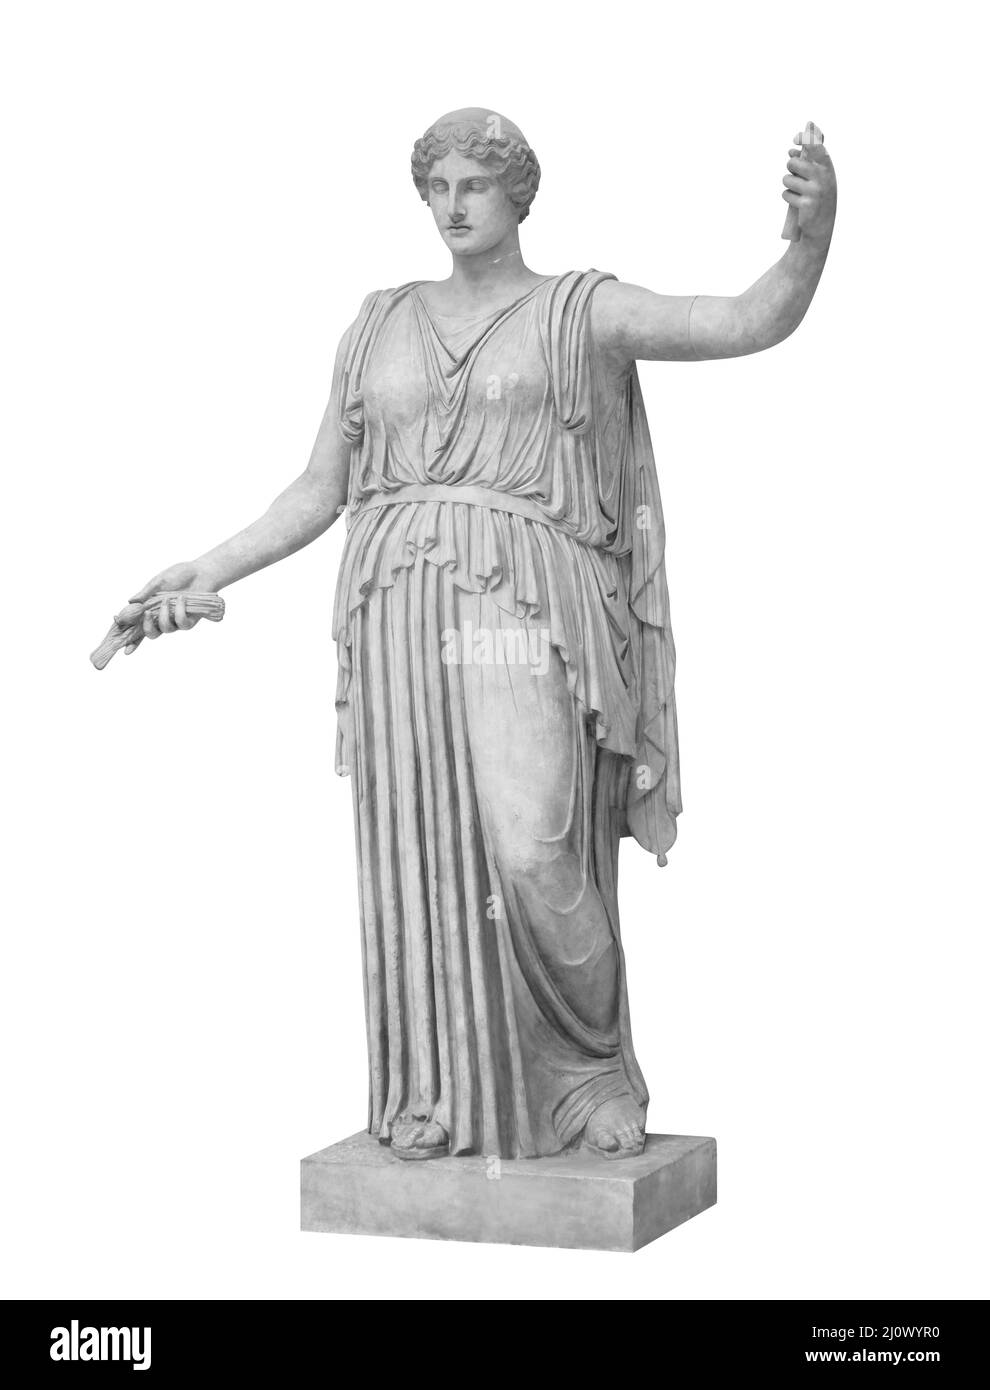 Estatua de Ceres romanos o deméter griego aislado en blanco con camino de recorte. Diosa de la agricultura, la cosecha, el grano, y la lov Foto de stock